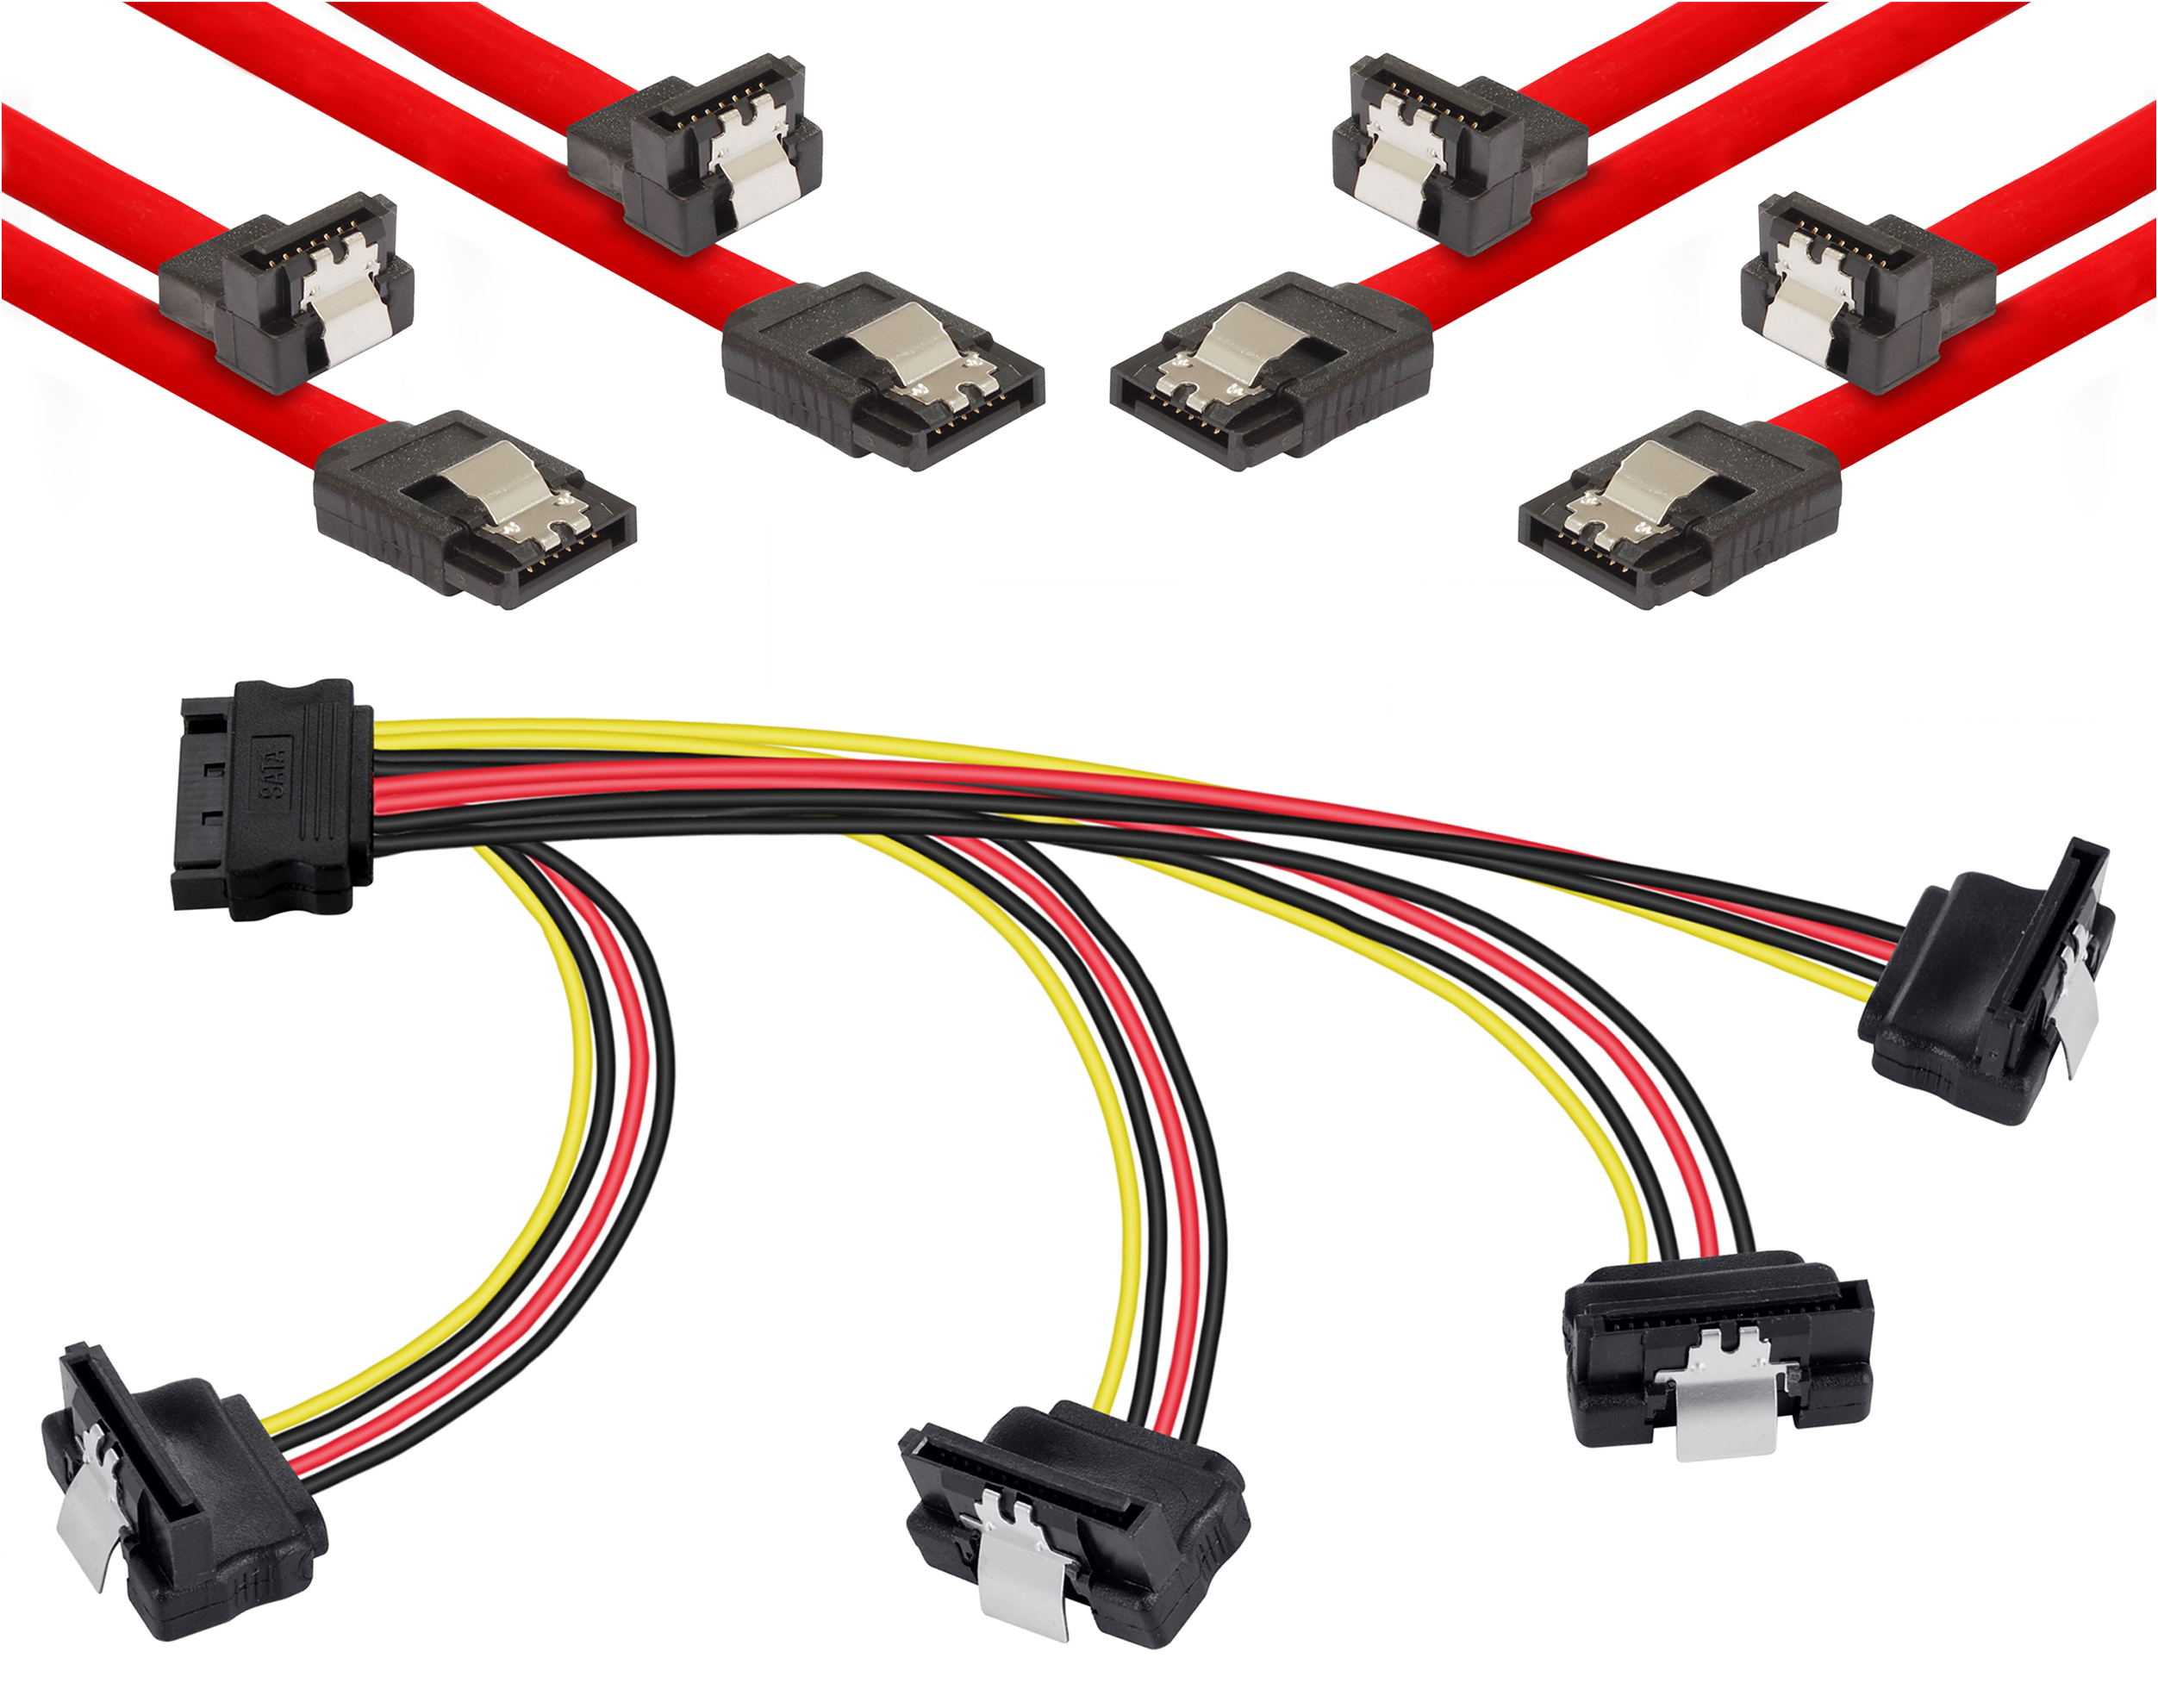 SATA Kabel Set, 4x SATA 3 Datenkabel + SATA 3 Stromadapterkabel